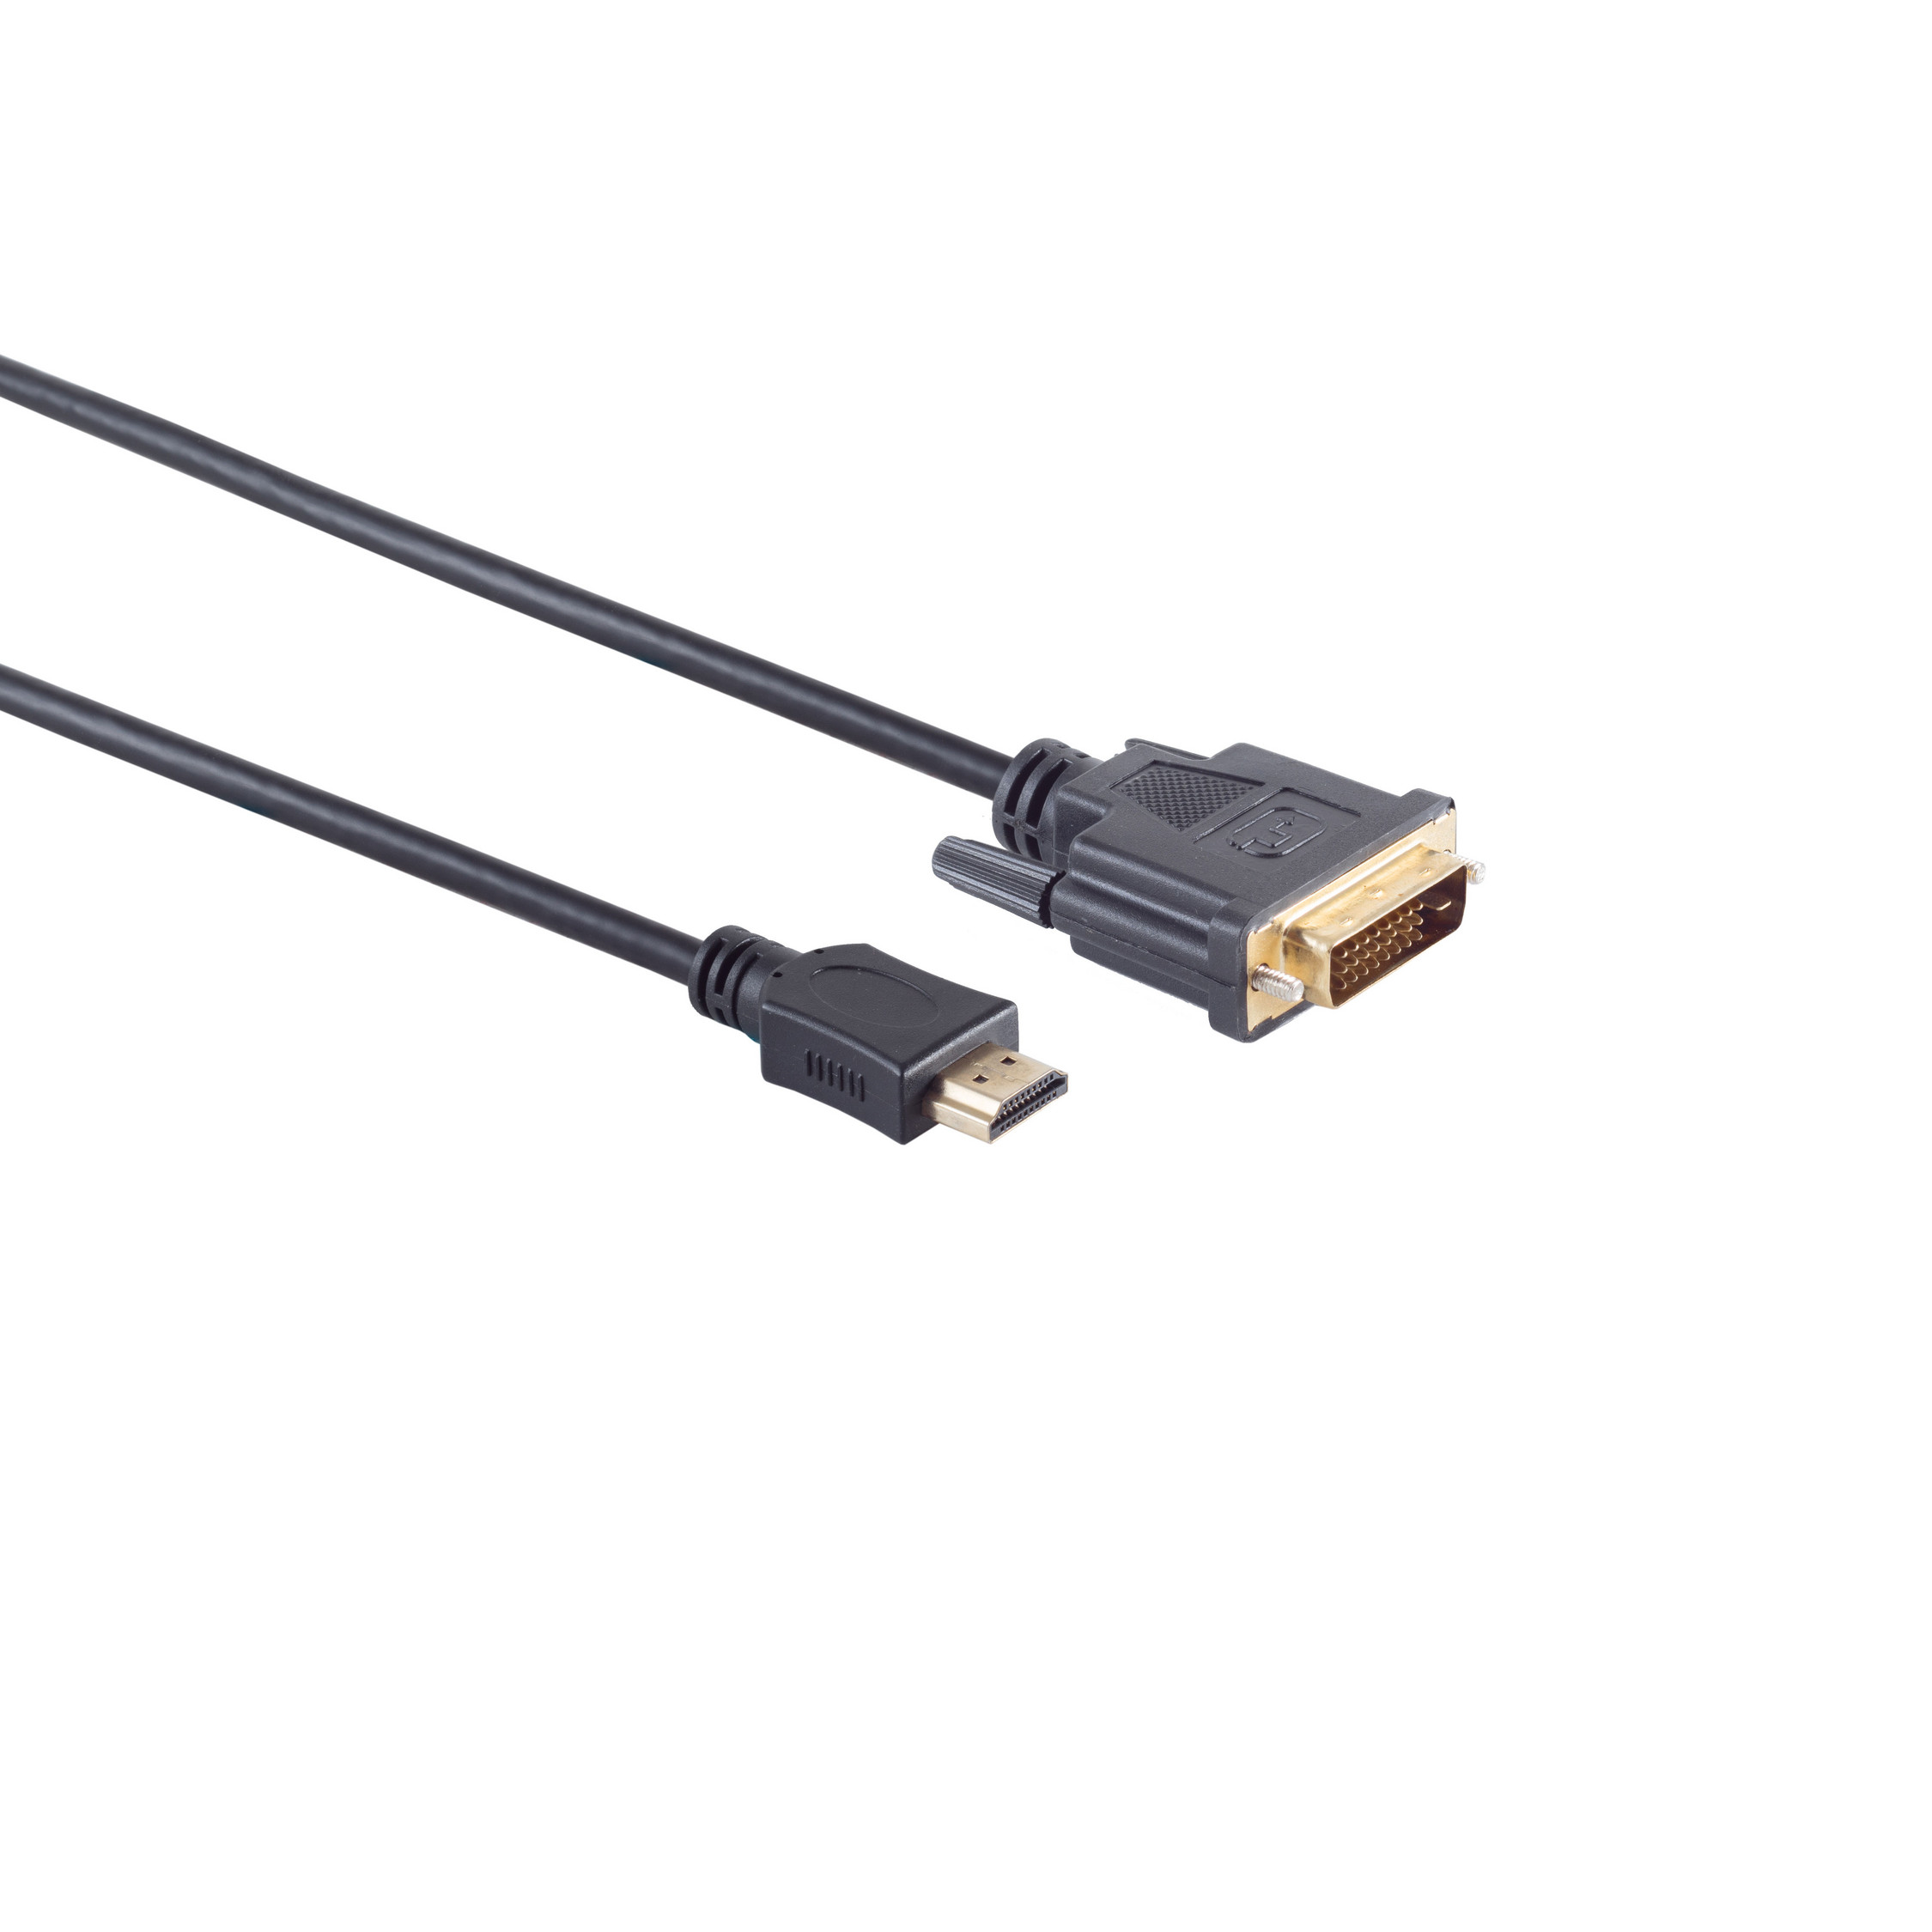 KABELBUDE HDMI Stecker / (24+1) HDMI Kabel 5m Stecker verg. DVI-D